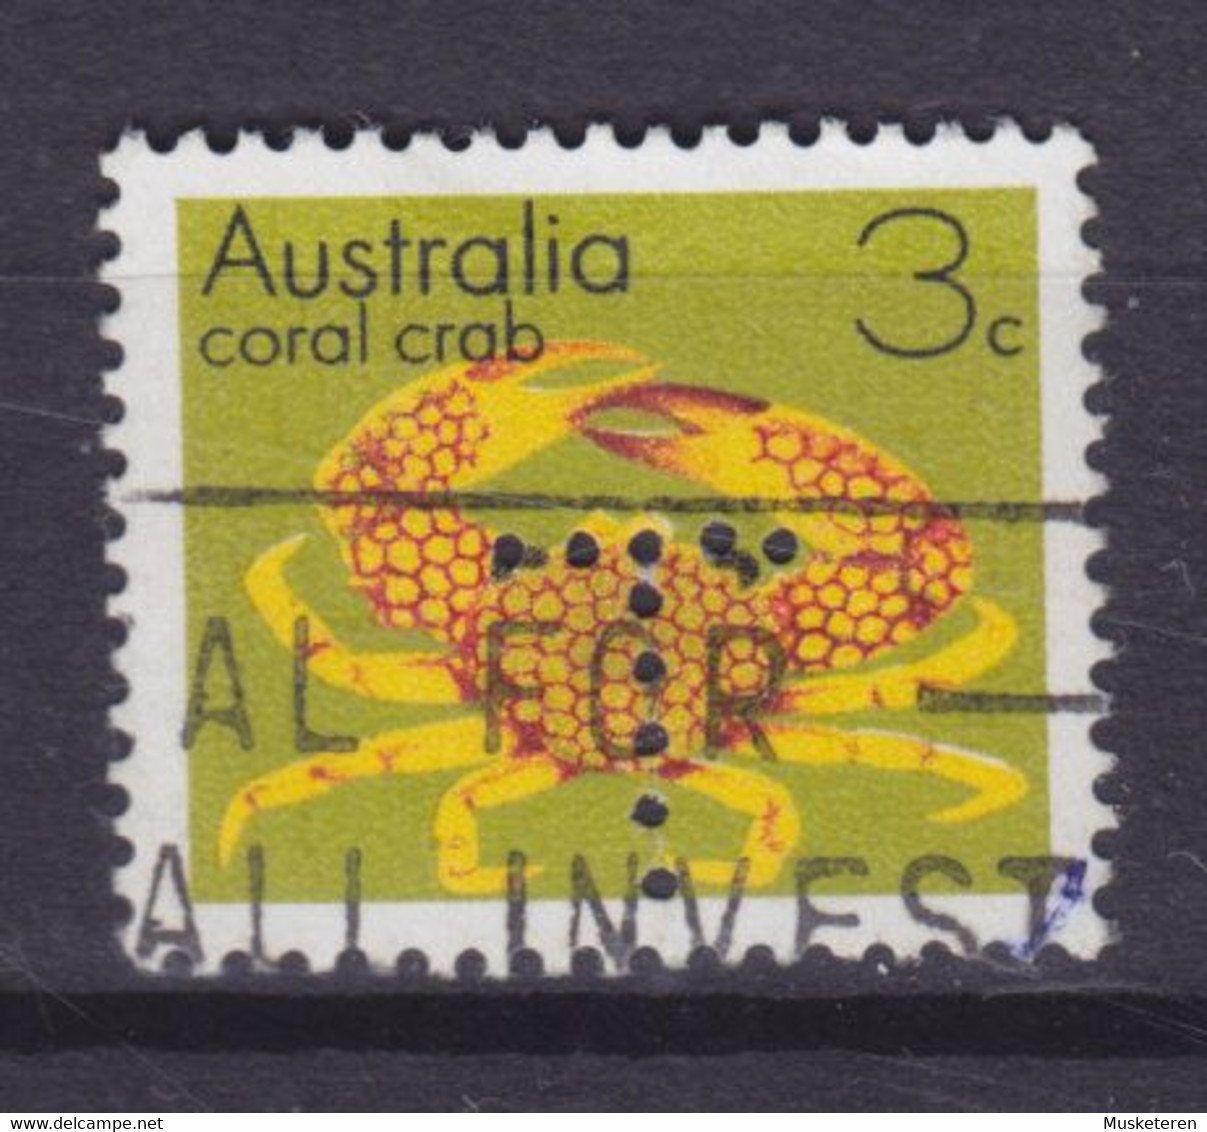 Australia Perfin Perforé Lochung 'T' Tasmania 1973 Mi. 528, 13c. Coral Crab (2 Scans) - Perfins